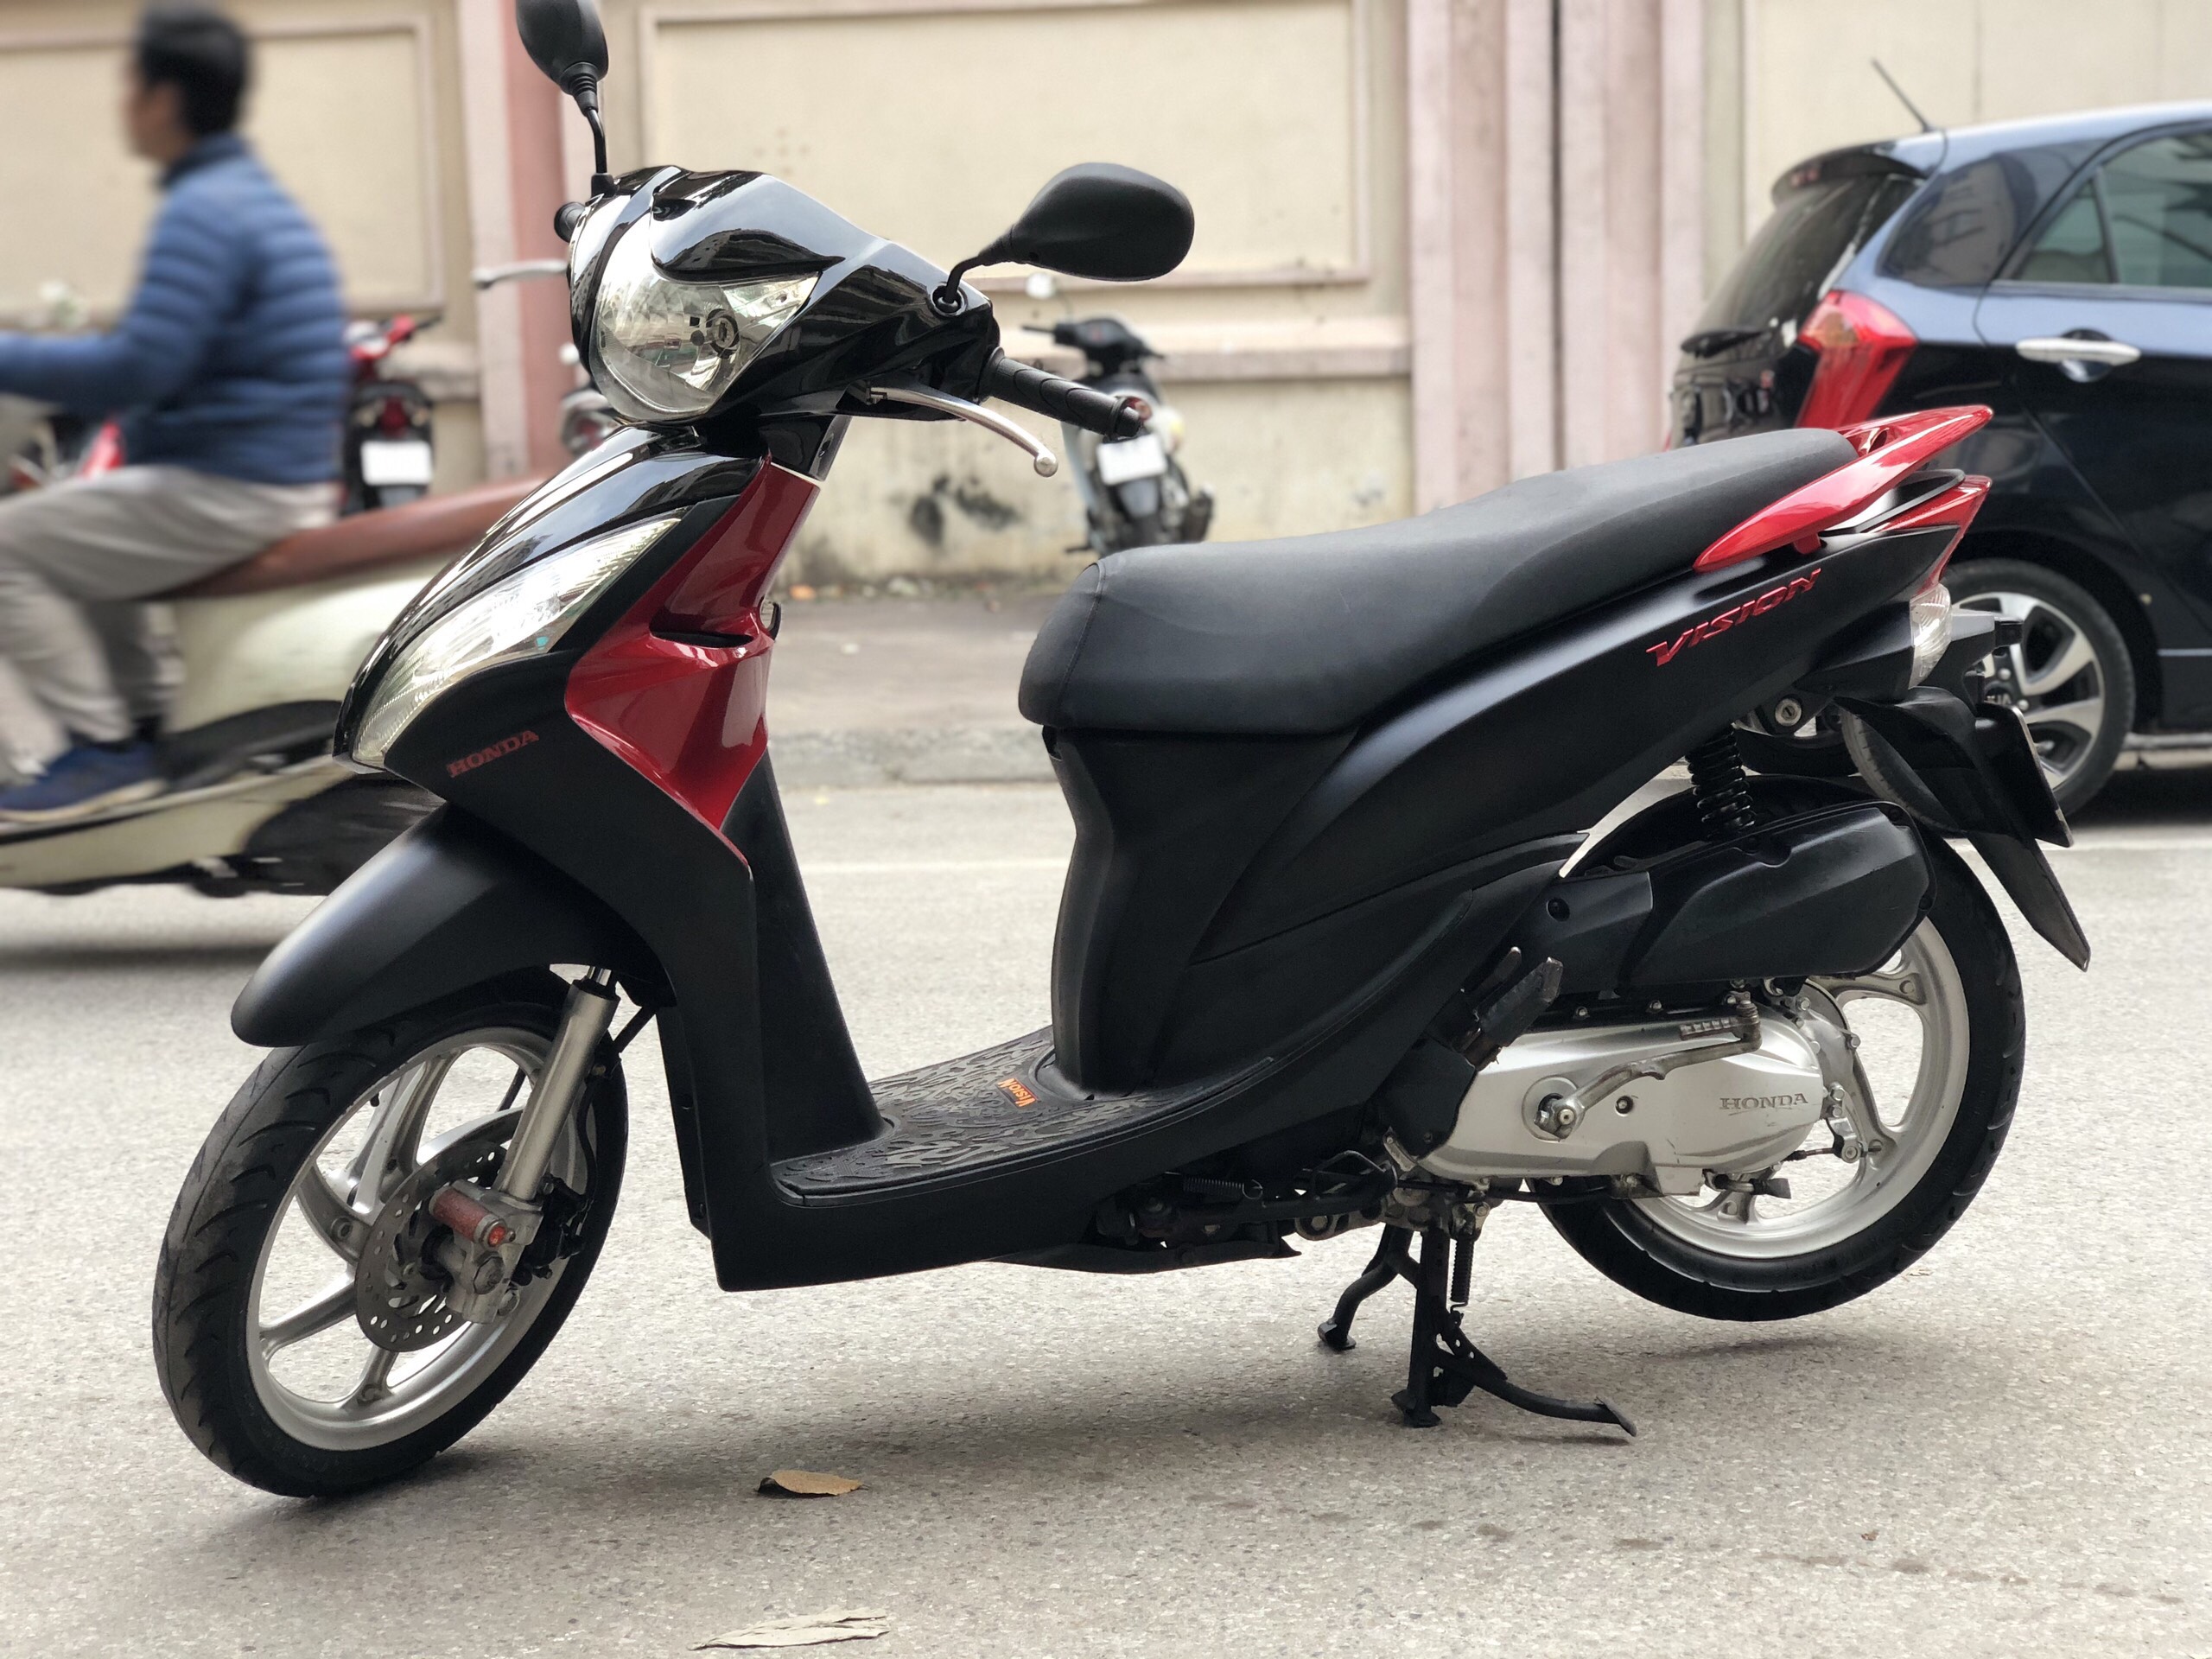 Xe ga quốc dân Honda Vision bất ngờ giảm giá mạnh trong tháng Ngâu   ÔtôXe máy  Vietnam VietnamPlus